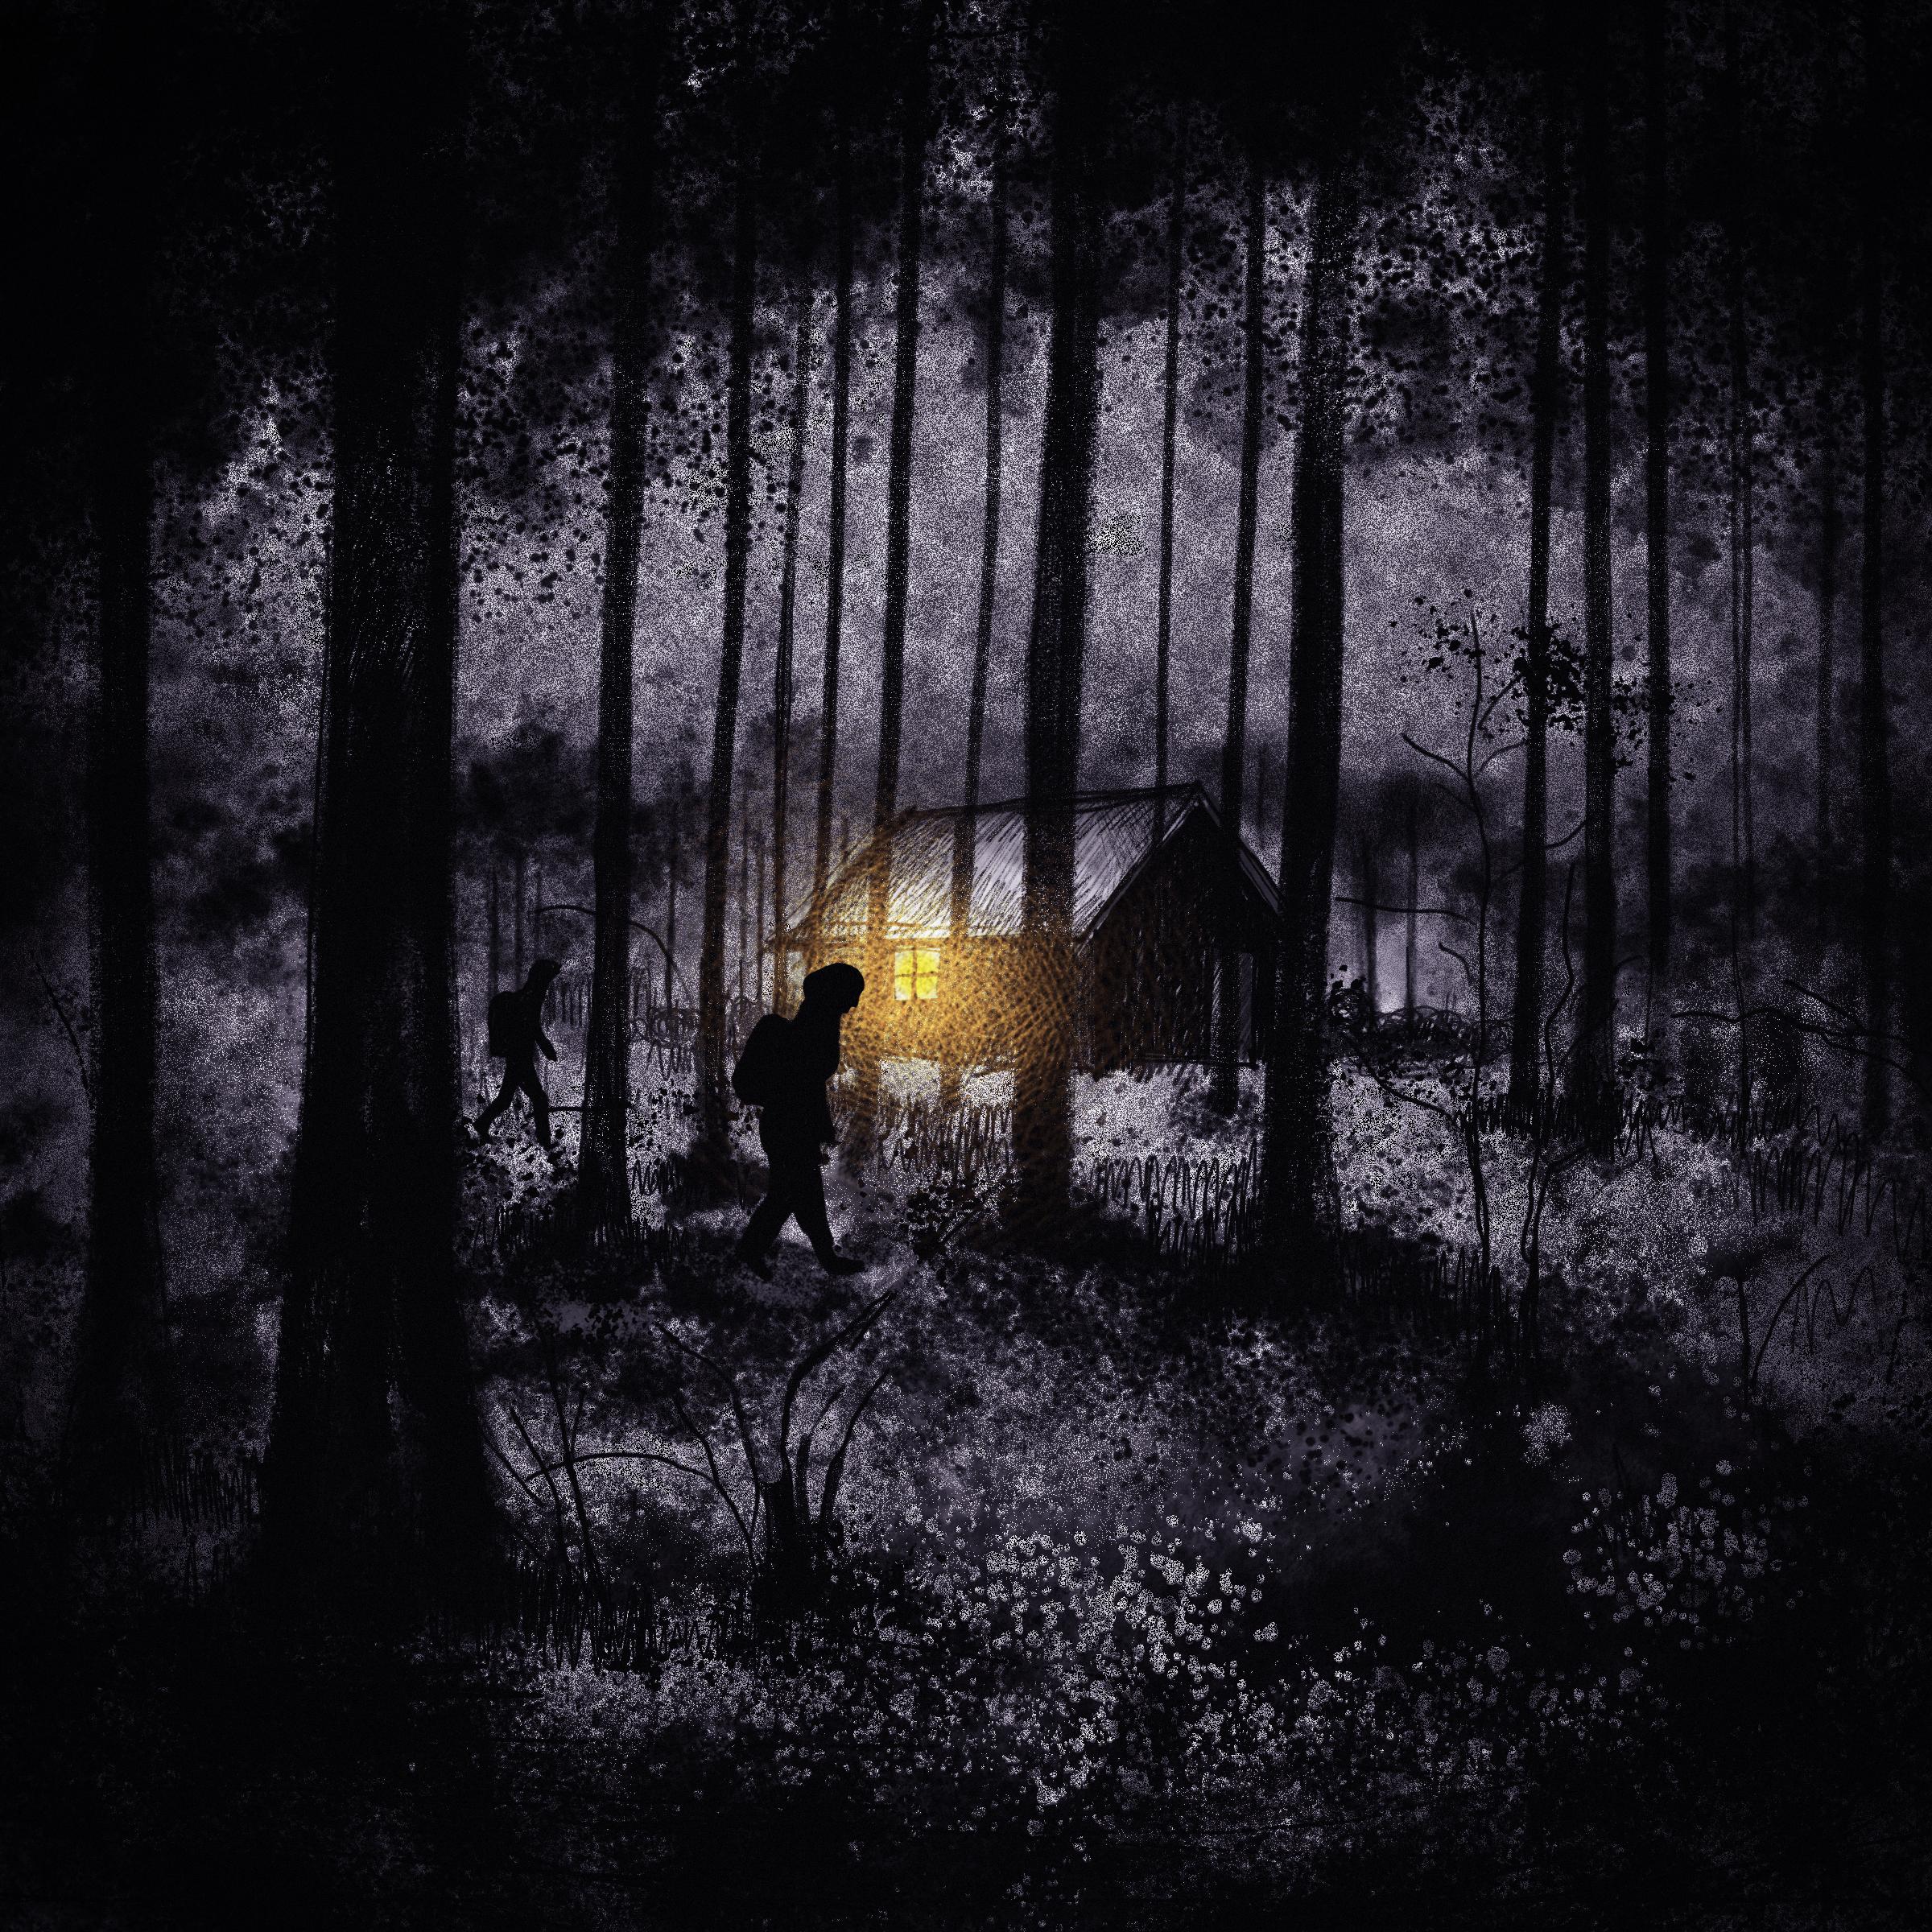 ilustracja przedstawia wędrowca w ciemnym lesie i chatkę z rozświetlonym oknem